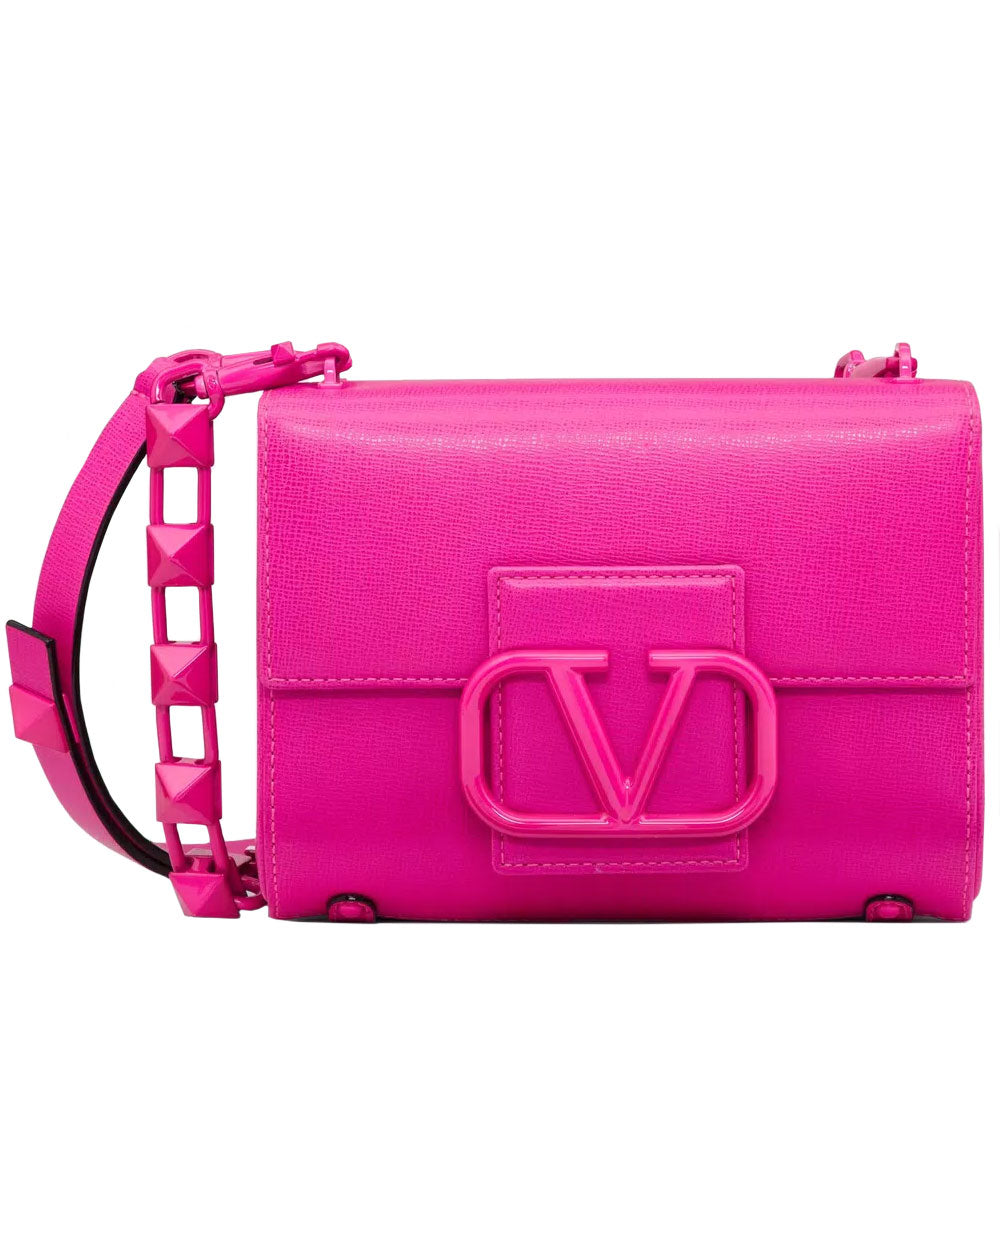 Valentino Garavani Stud Sign Leather Shoulder Bag - Light Pink - ShopStyle